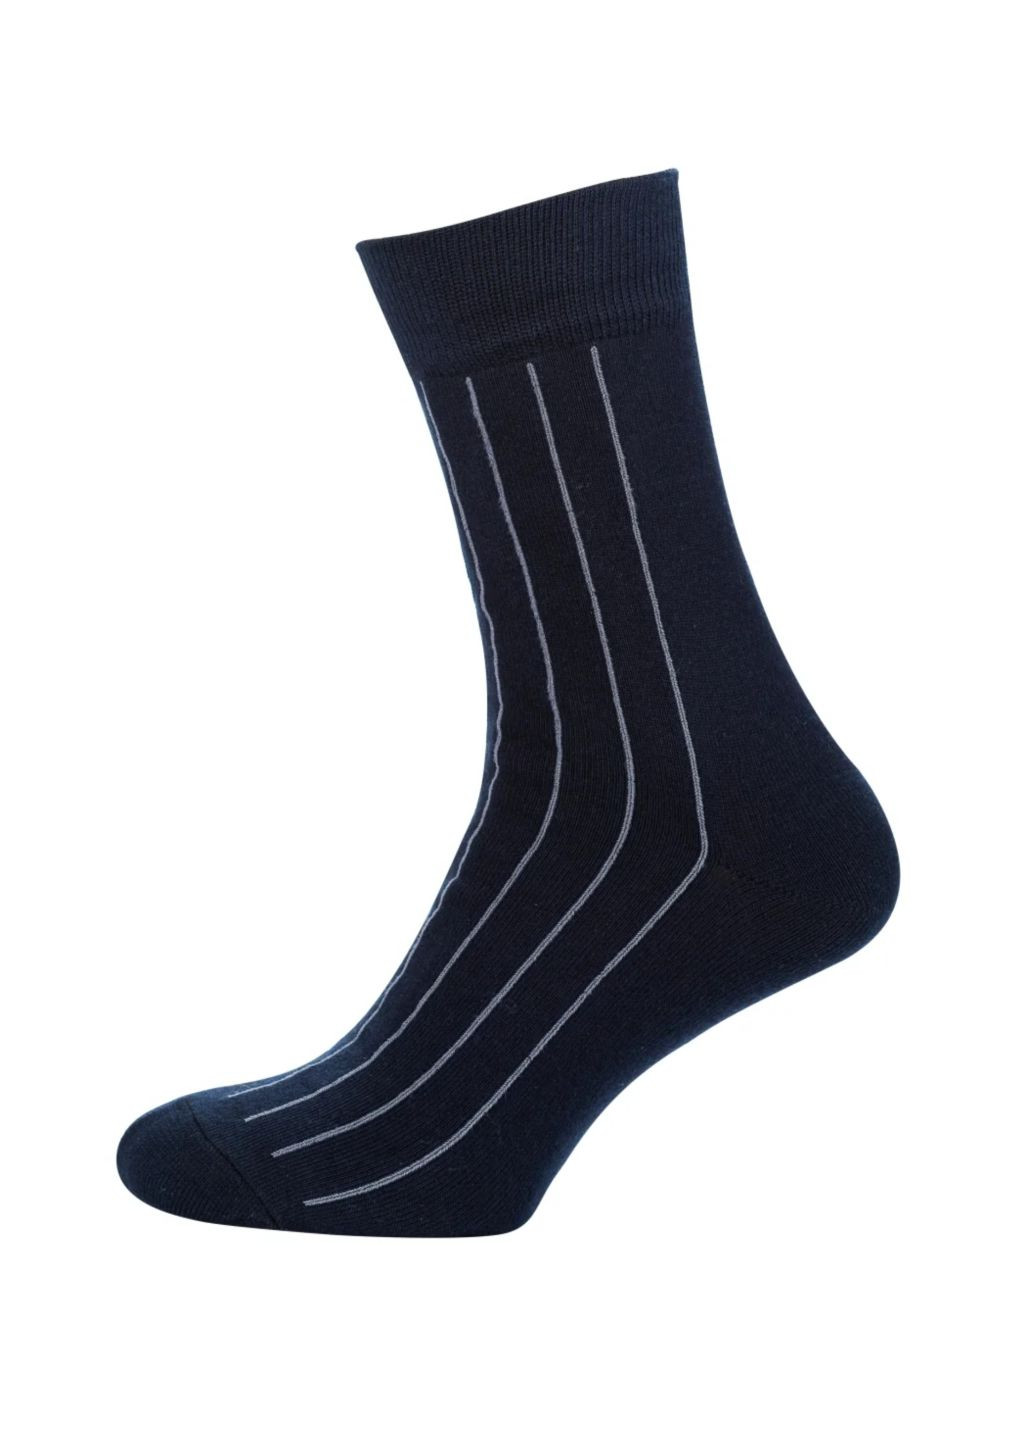 RFT Шкарпетки чол.клас.вис./RT1311-068/смужки/39-42/синій MZ rt1311-068-шт (260063206)